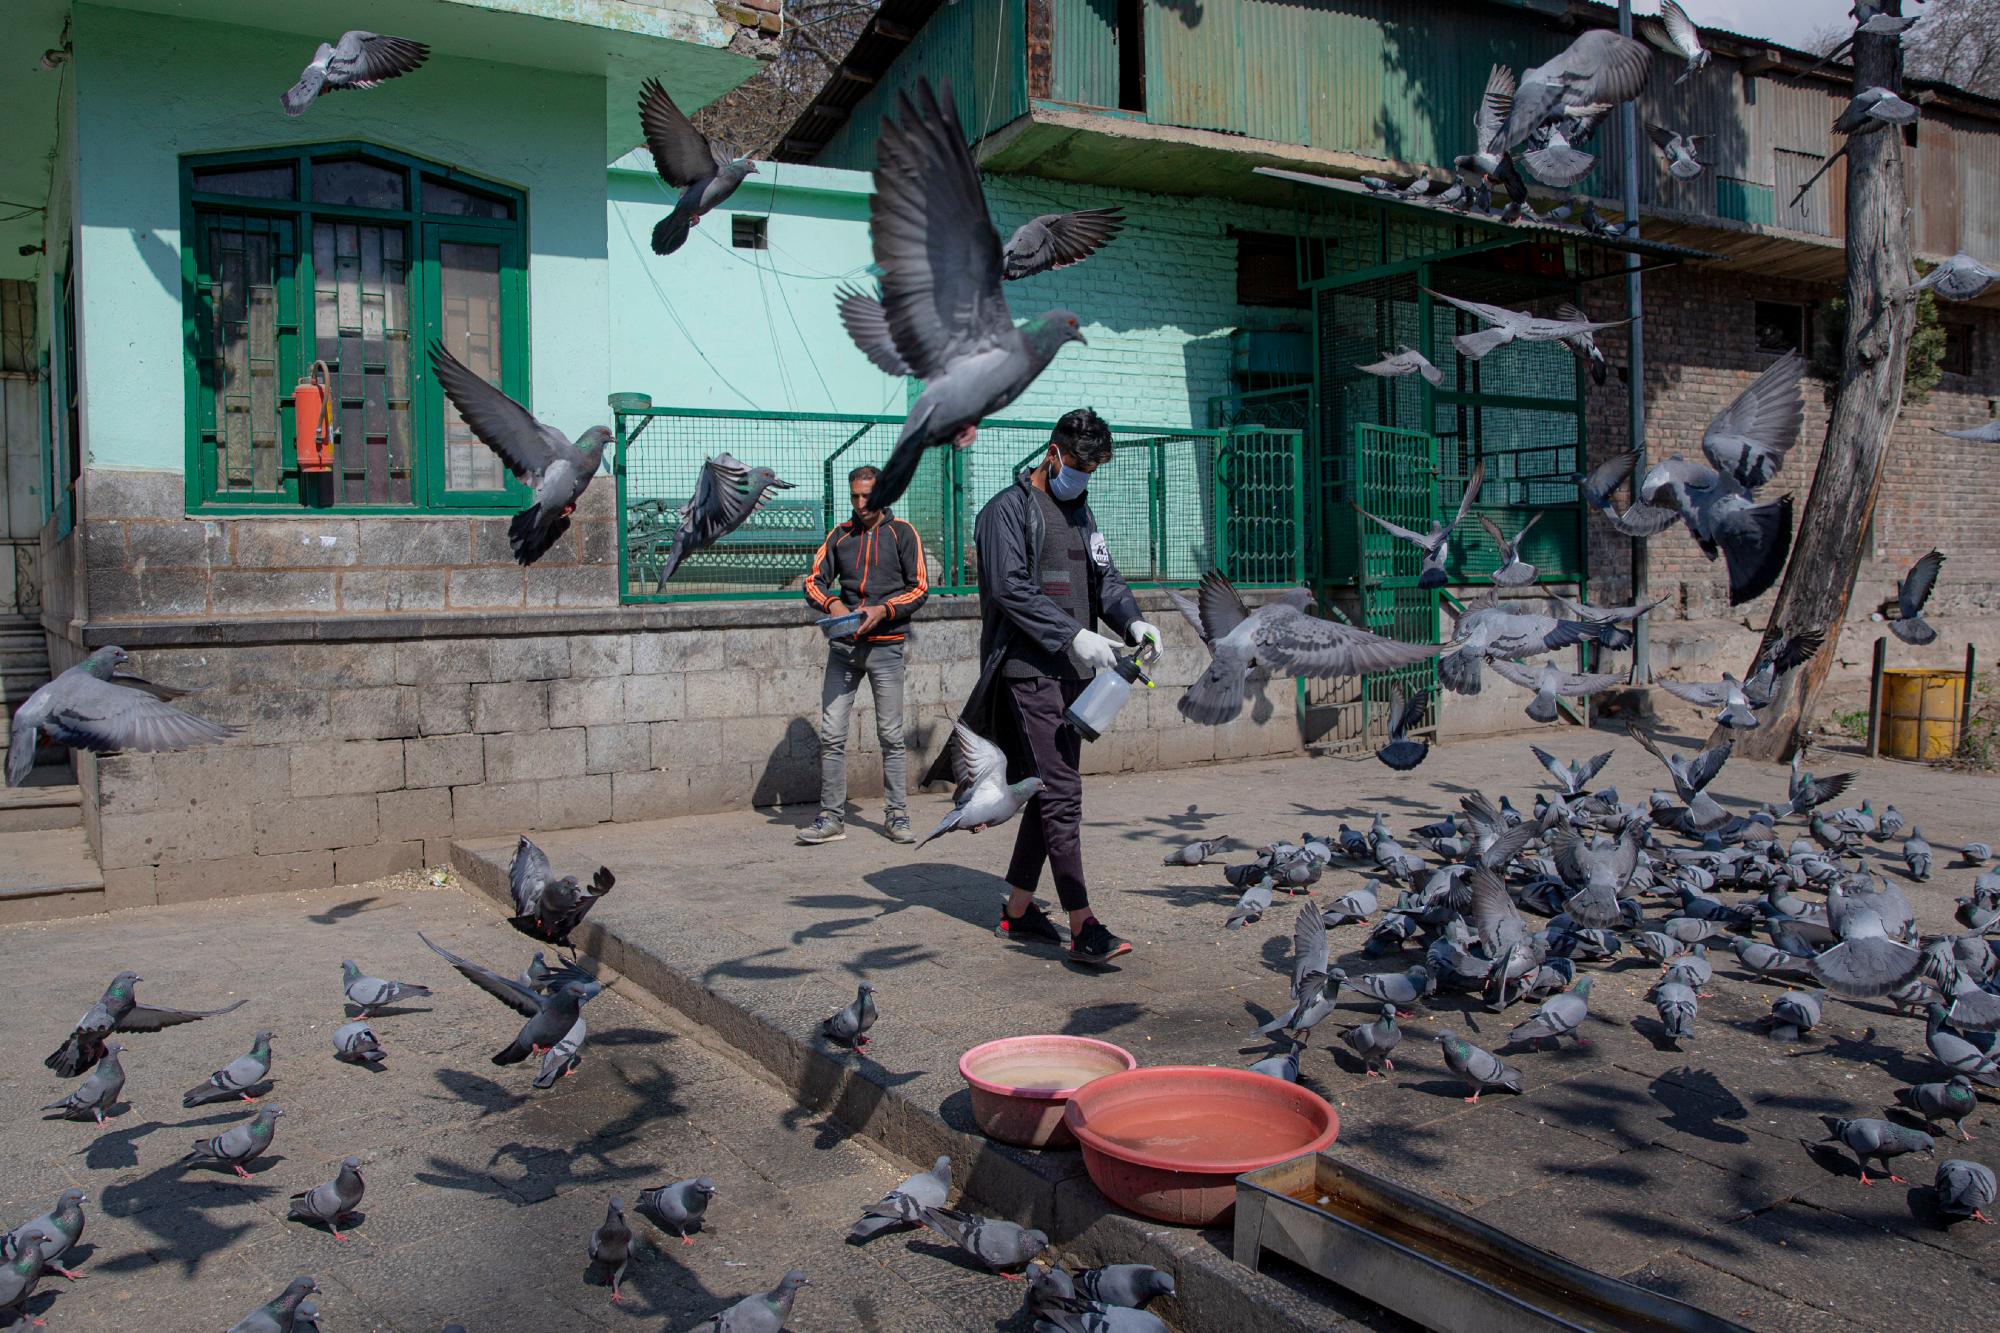 Los voluntarios de Cachemira rocían desinfectantes en un área fuera de un santuario donde se alimentan palomas como medida de precaución contra COVID-19 en Srinagar, Cachemira controlada por la India, el miércoles 18 de marzo de 2020. Para la mayoría de las personas, el nuevo coronavirus causa solo síntomas leves o moderados. Para algunos puede causar una enfermedad más grave.